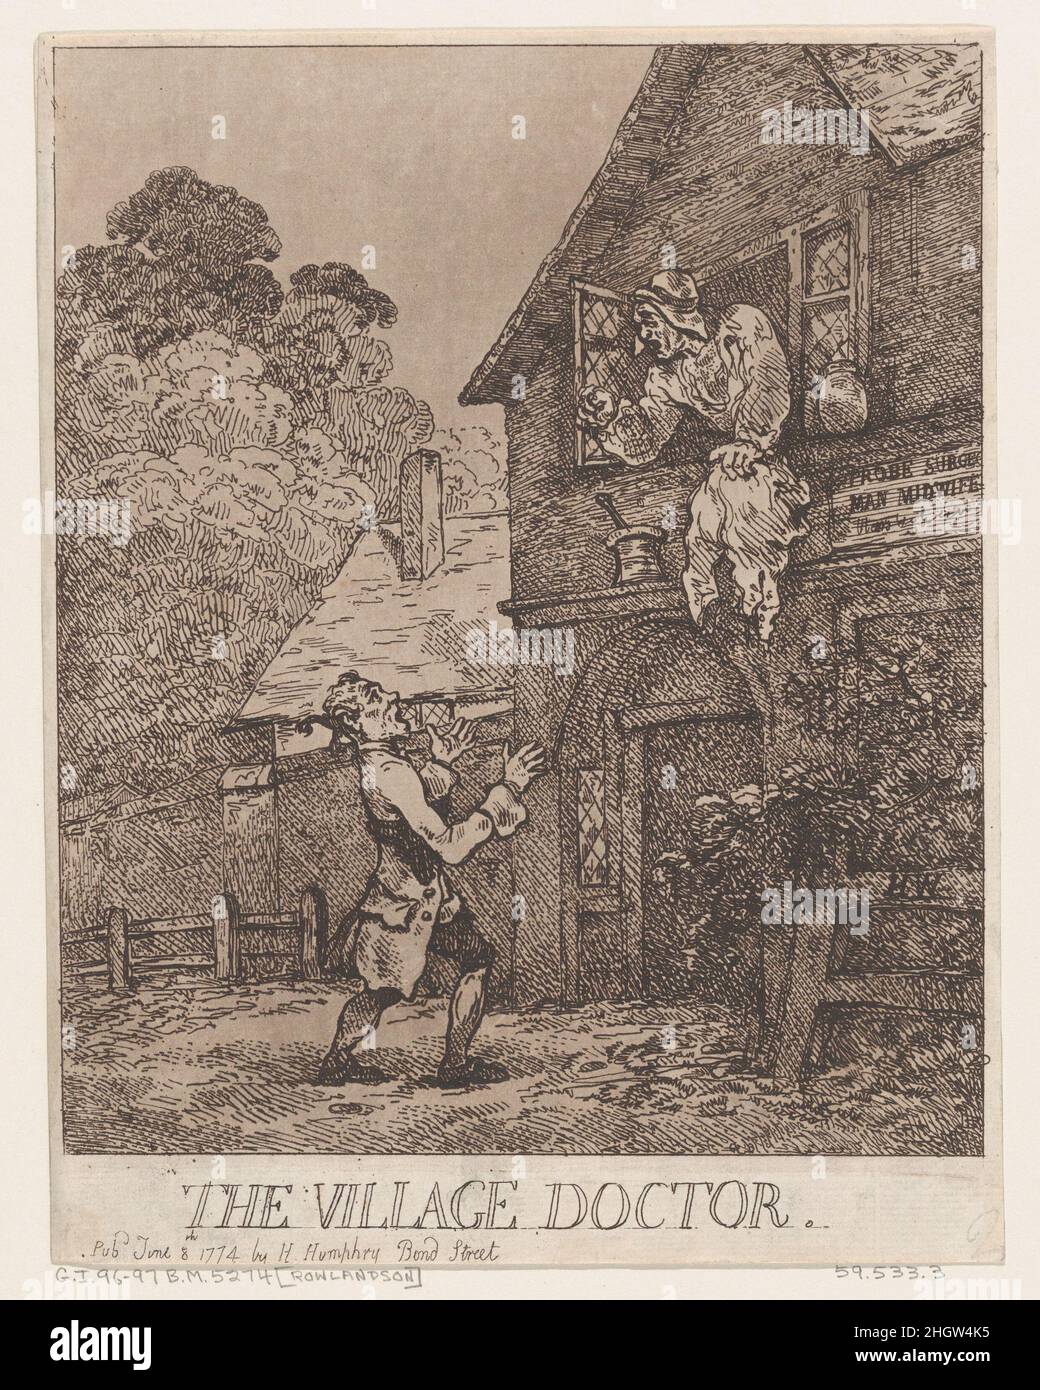 The Village Doctor 8. Juni 1774 Thomas Rowlandson Britisch. Der Dorfarzt. Nach Henry Wigstead (British, 1745?–1800 Margate). 8. Juni 1774. Ätzung und Aquatinta. Hannah Humphrey (London). Ausdrucke Stockfoto